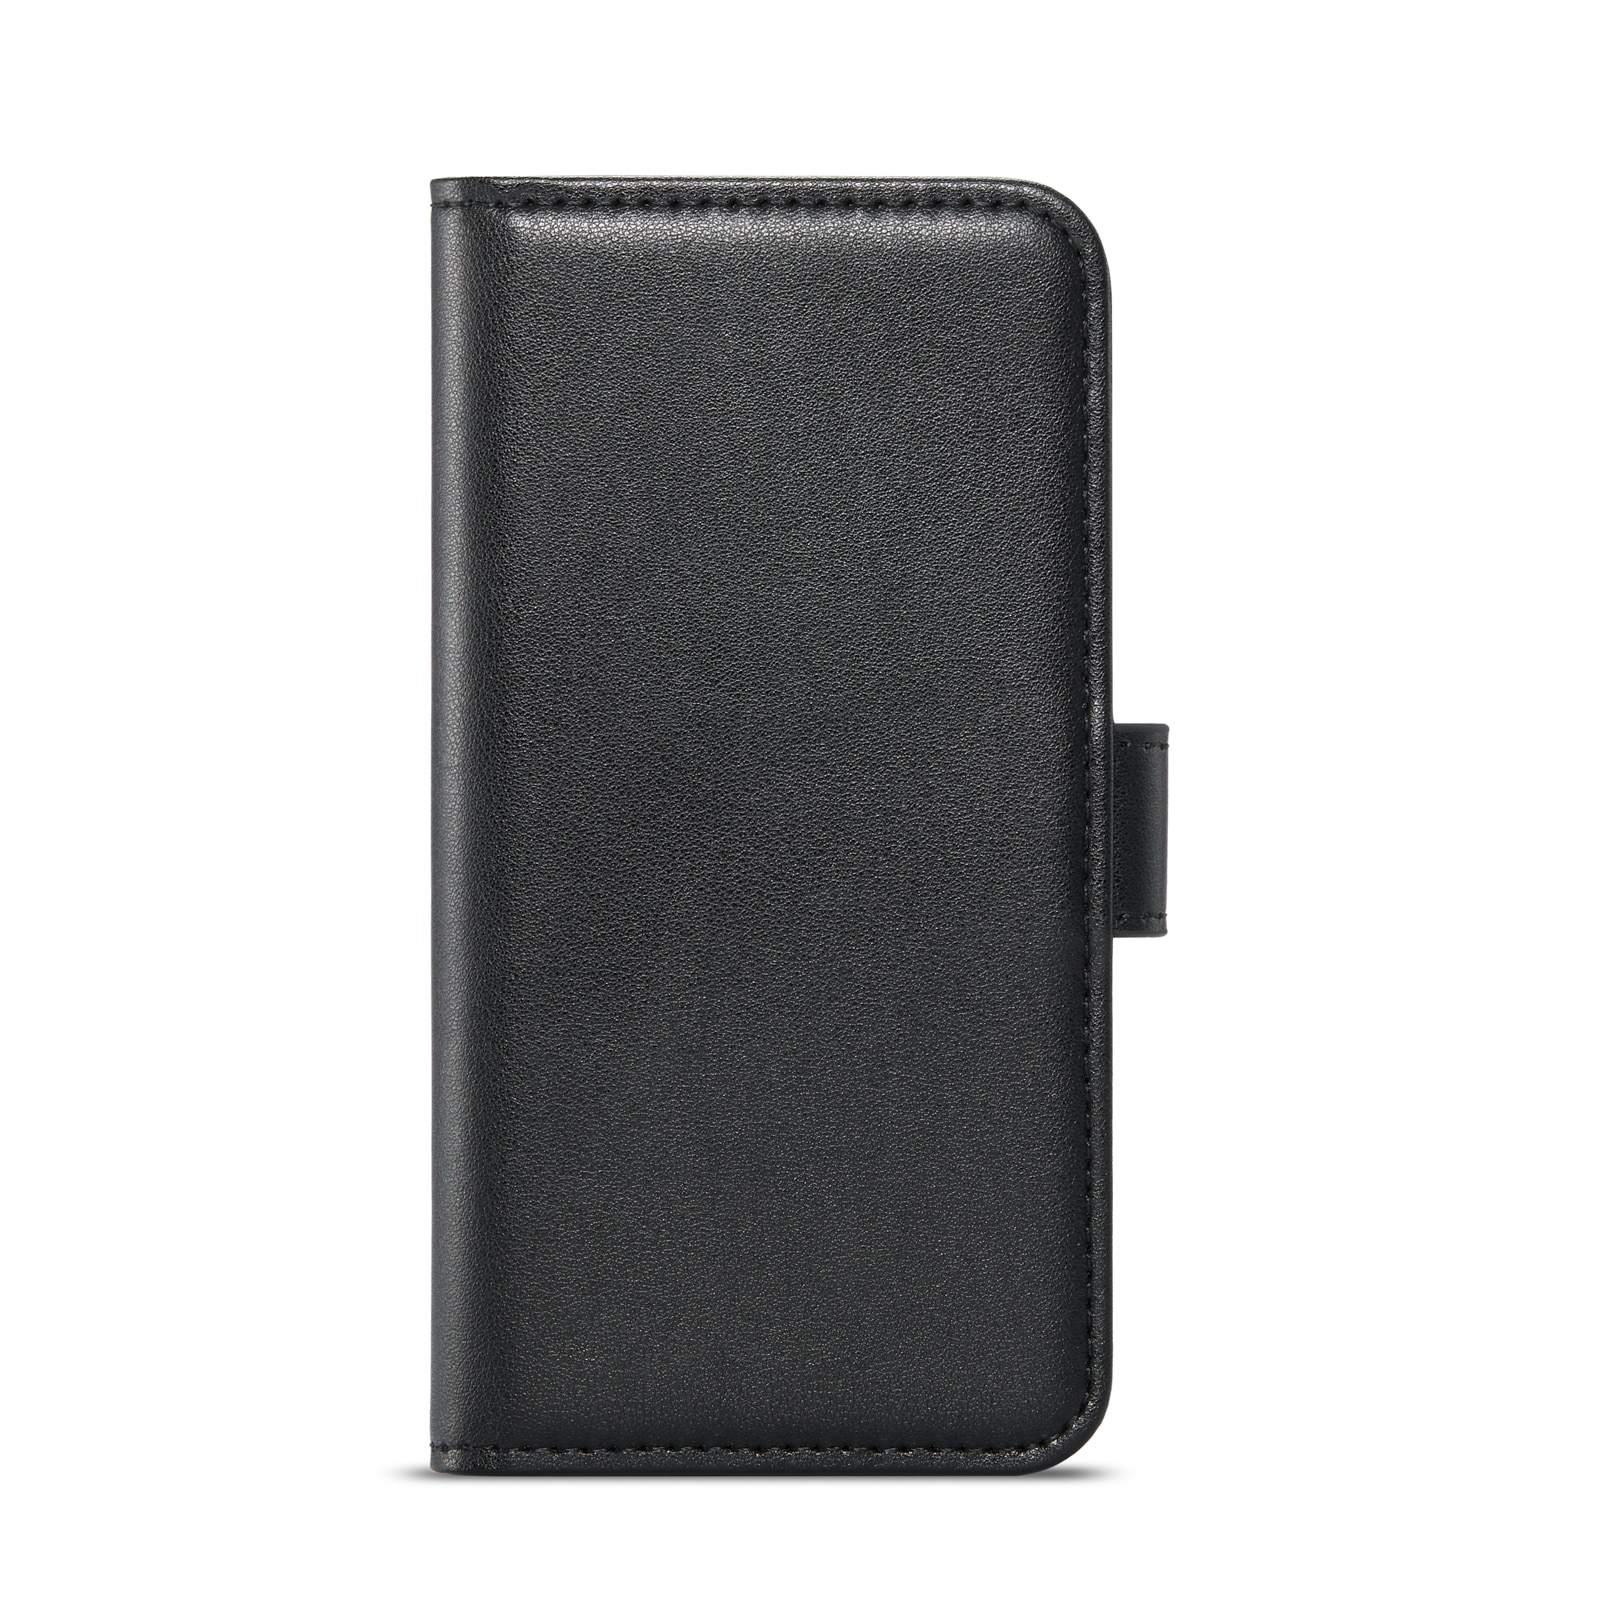 iPhone SE (2020) Plånboksfodral i Äkta Läder, svart